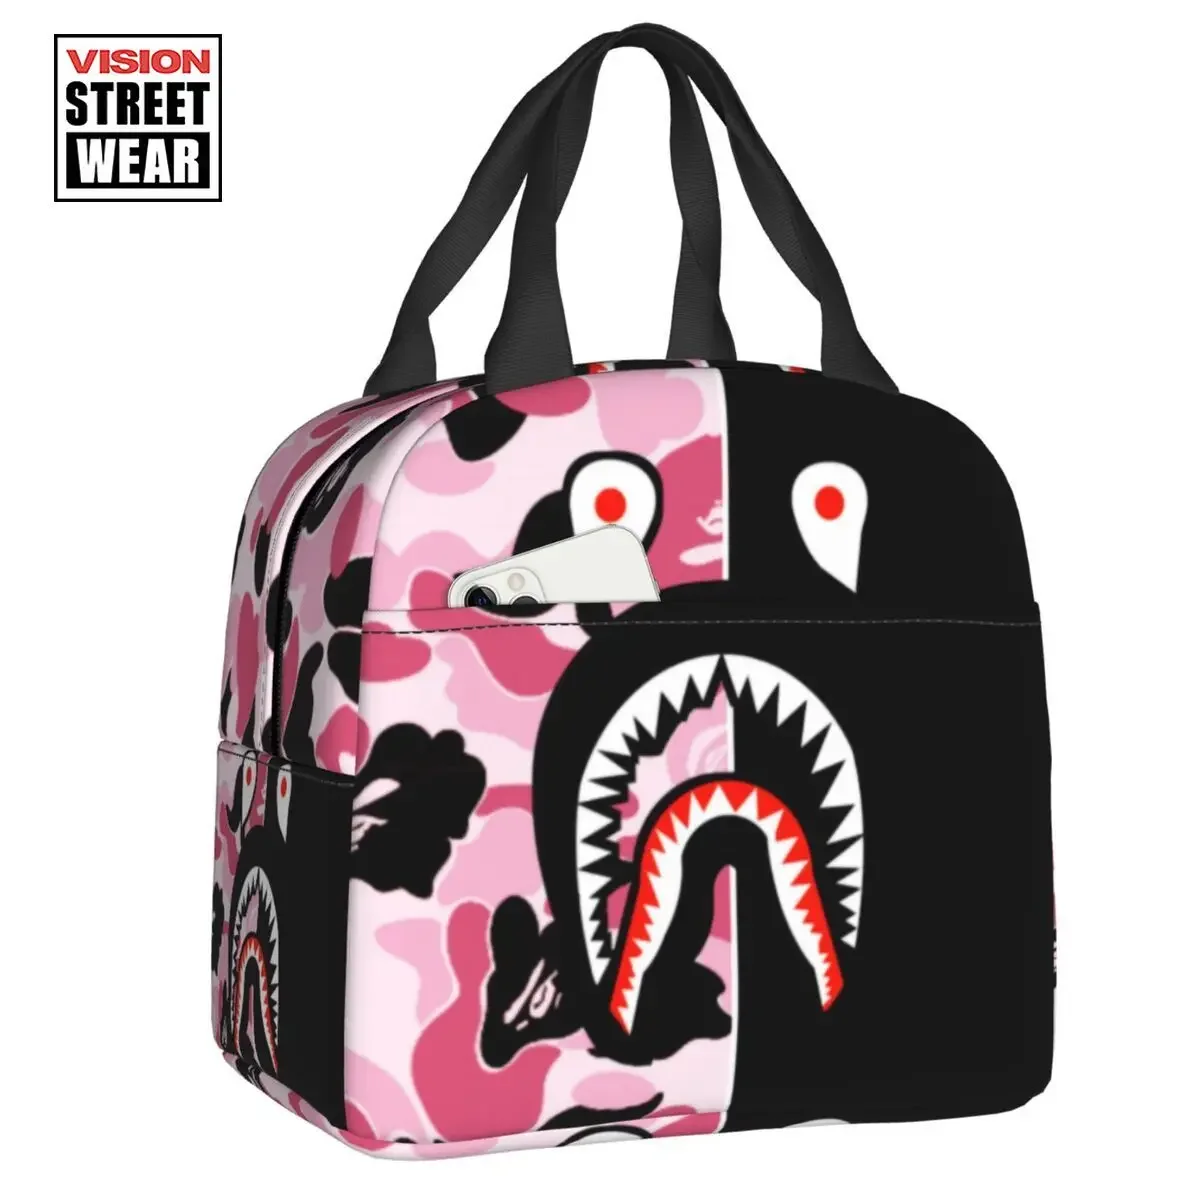 

Камуфляжная термоизолированная сумка для ланча Dark Shark Camo, многофункциональная сумка-тоут для работы, школы, путешествий, коробка для еды